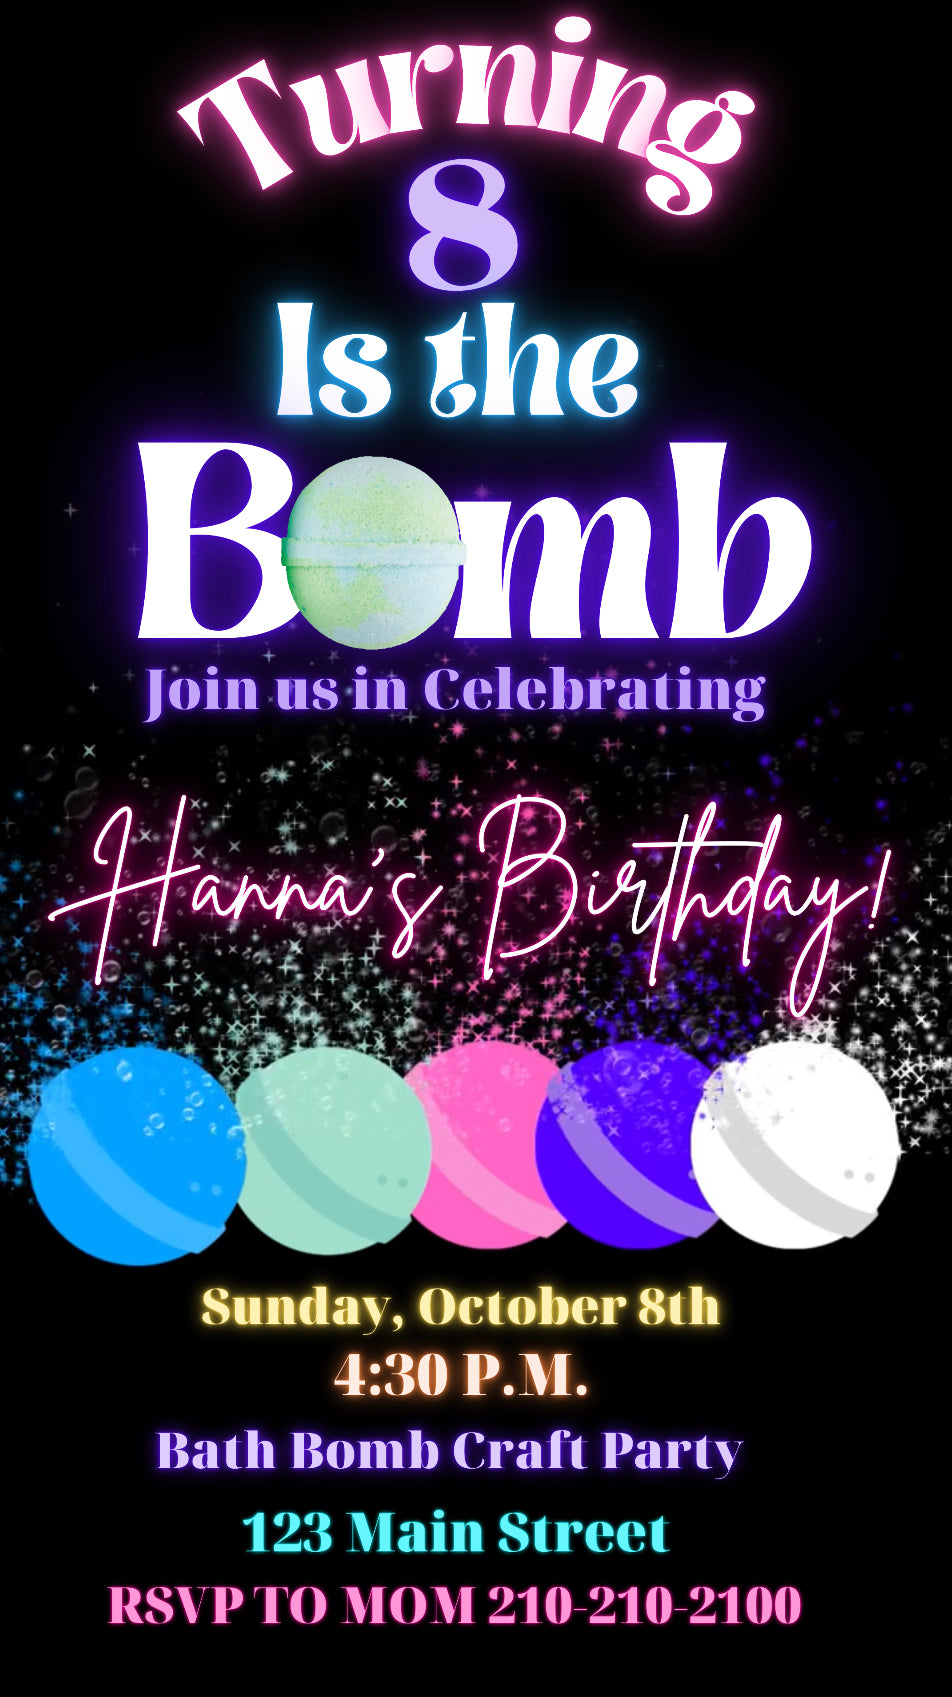 Bath Bomb Party Video invitation, Bath Soap Girls birthday invitation –  Hostessy Video Invitations